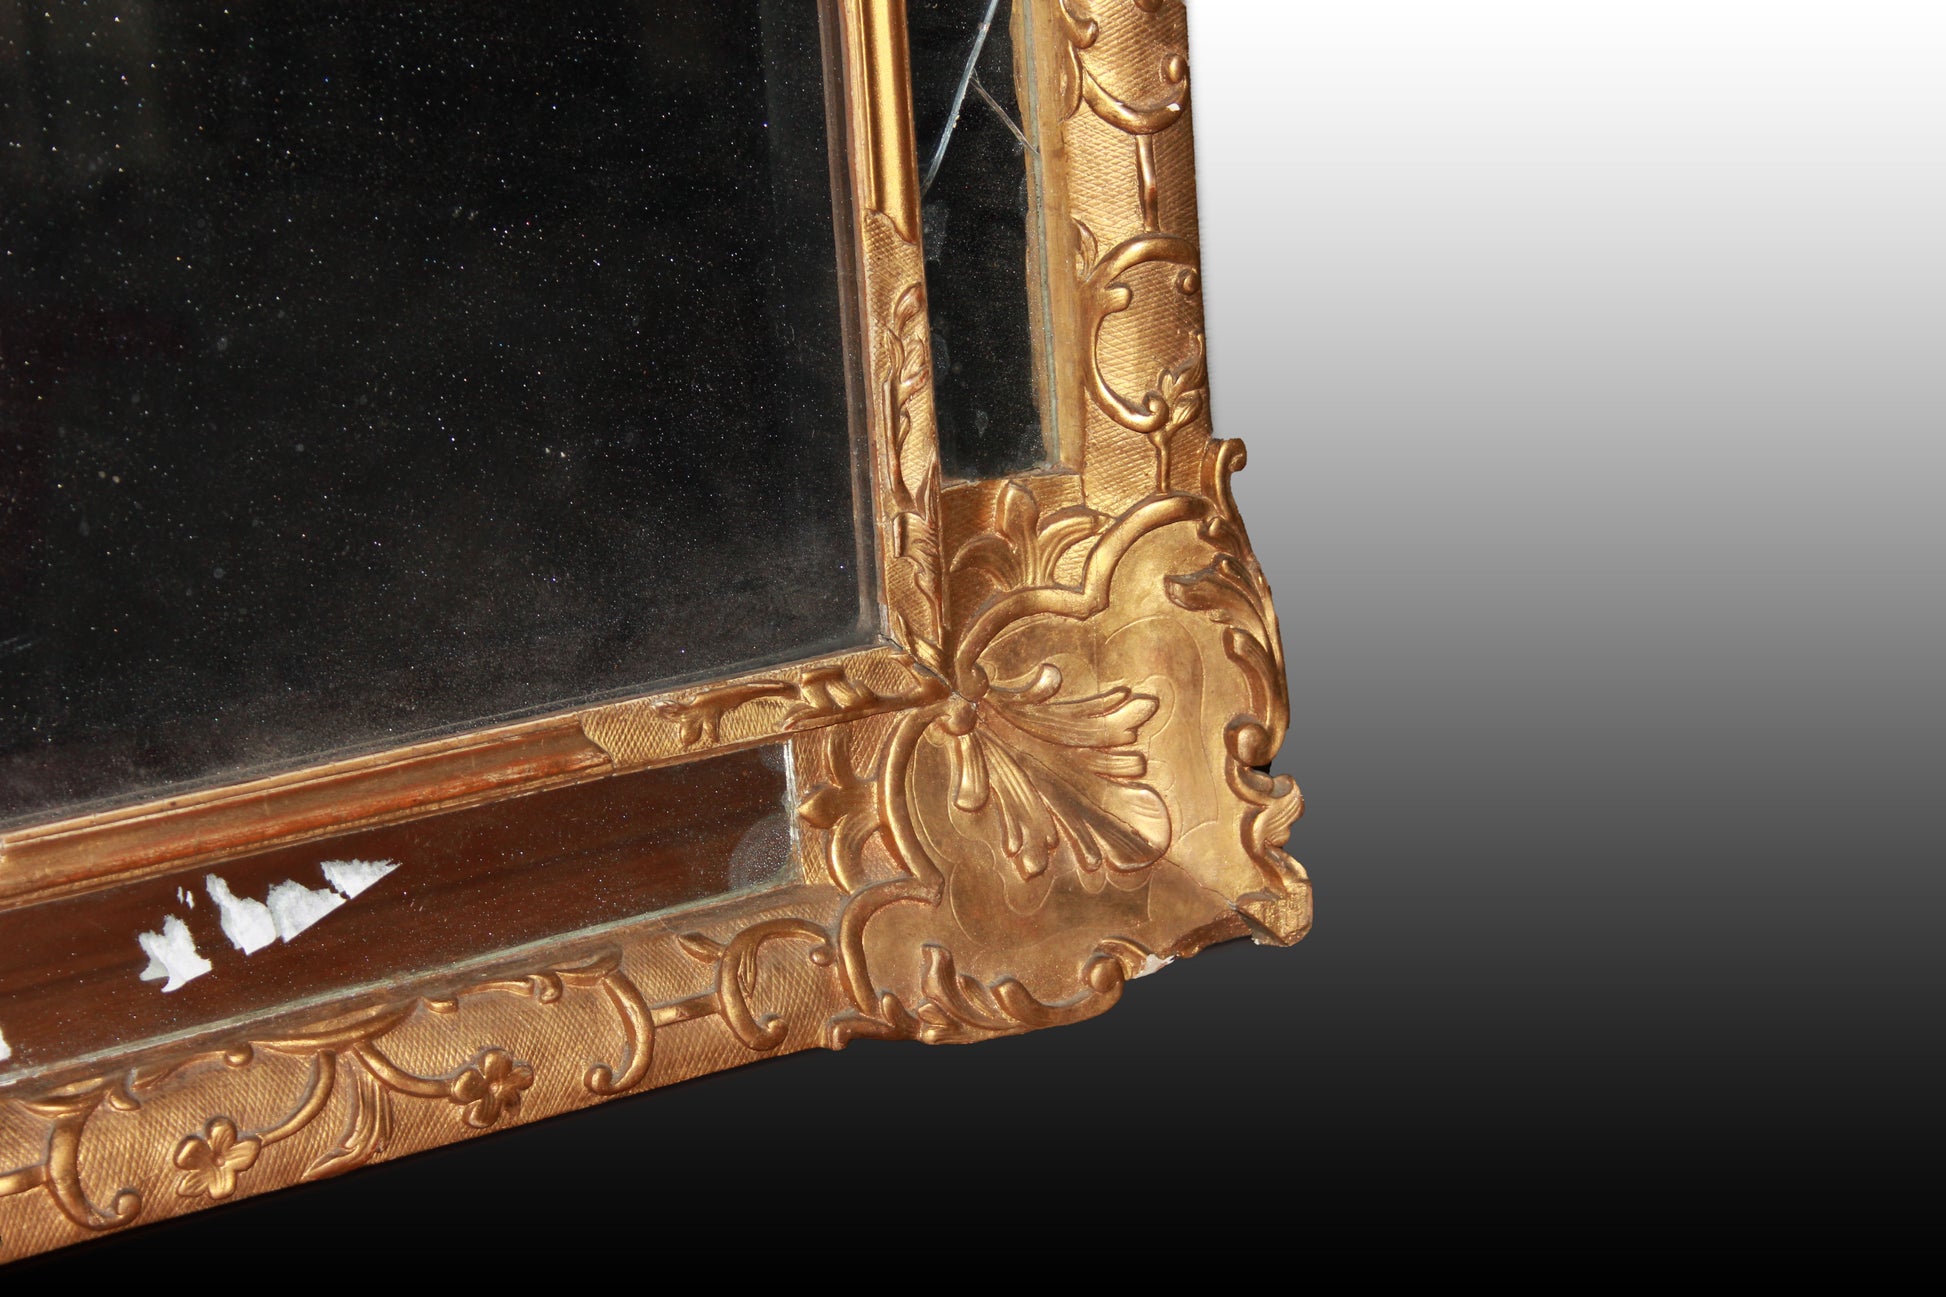 Graziosa specchiera francese del 1800 Stile Luigi XVI dorata foglia oro